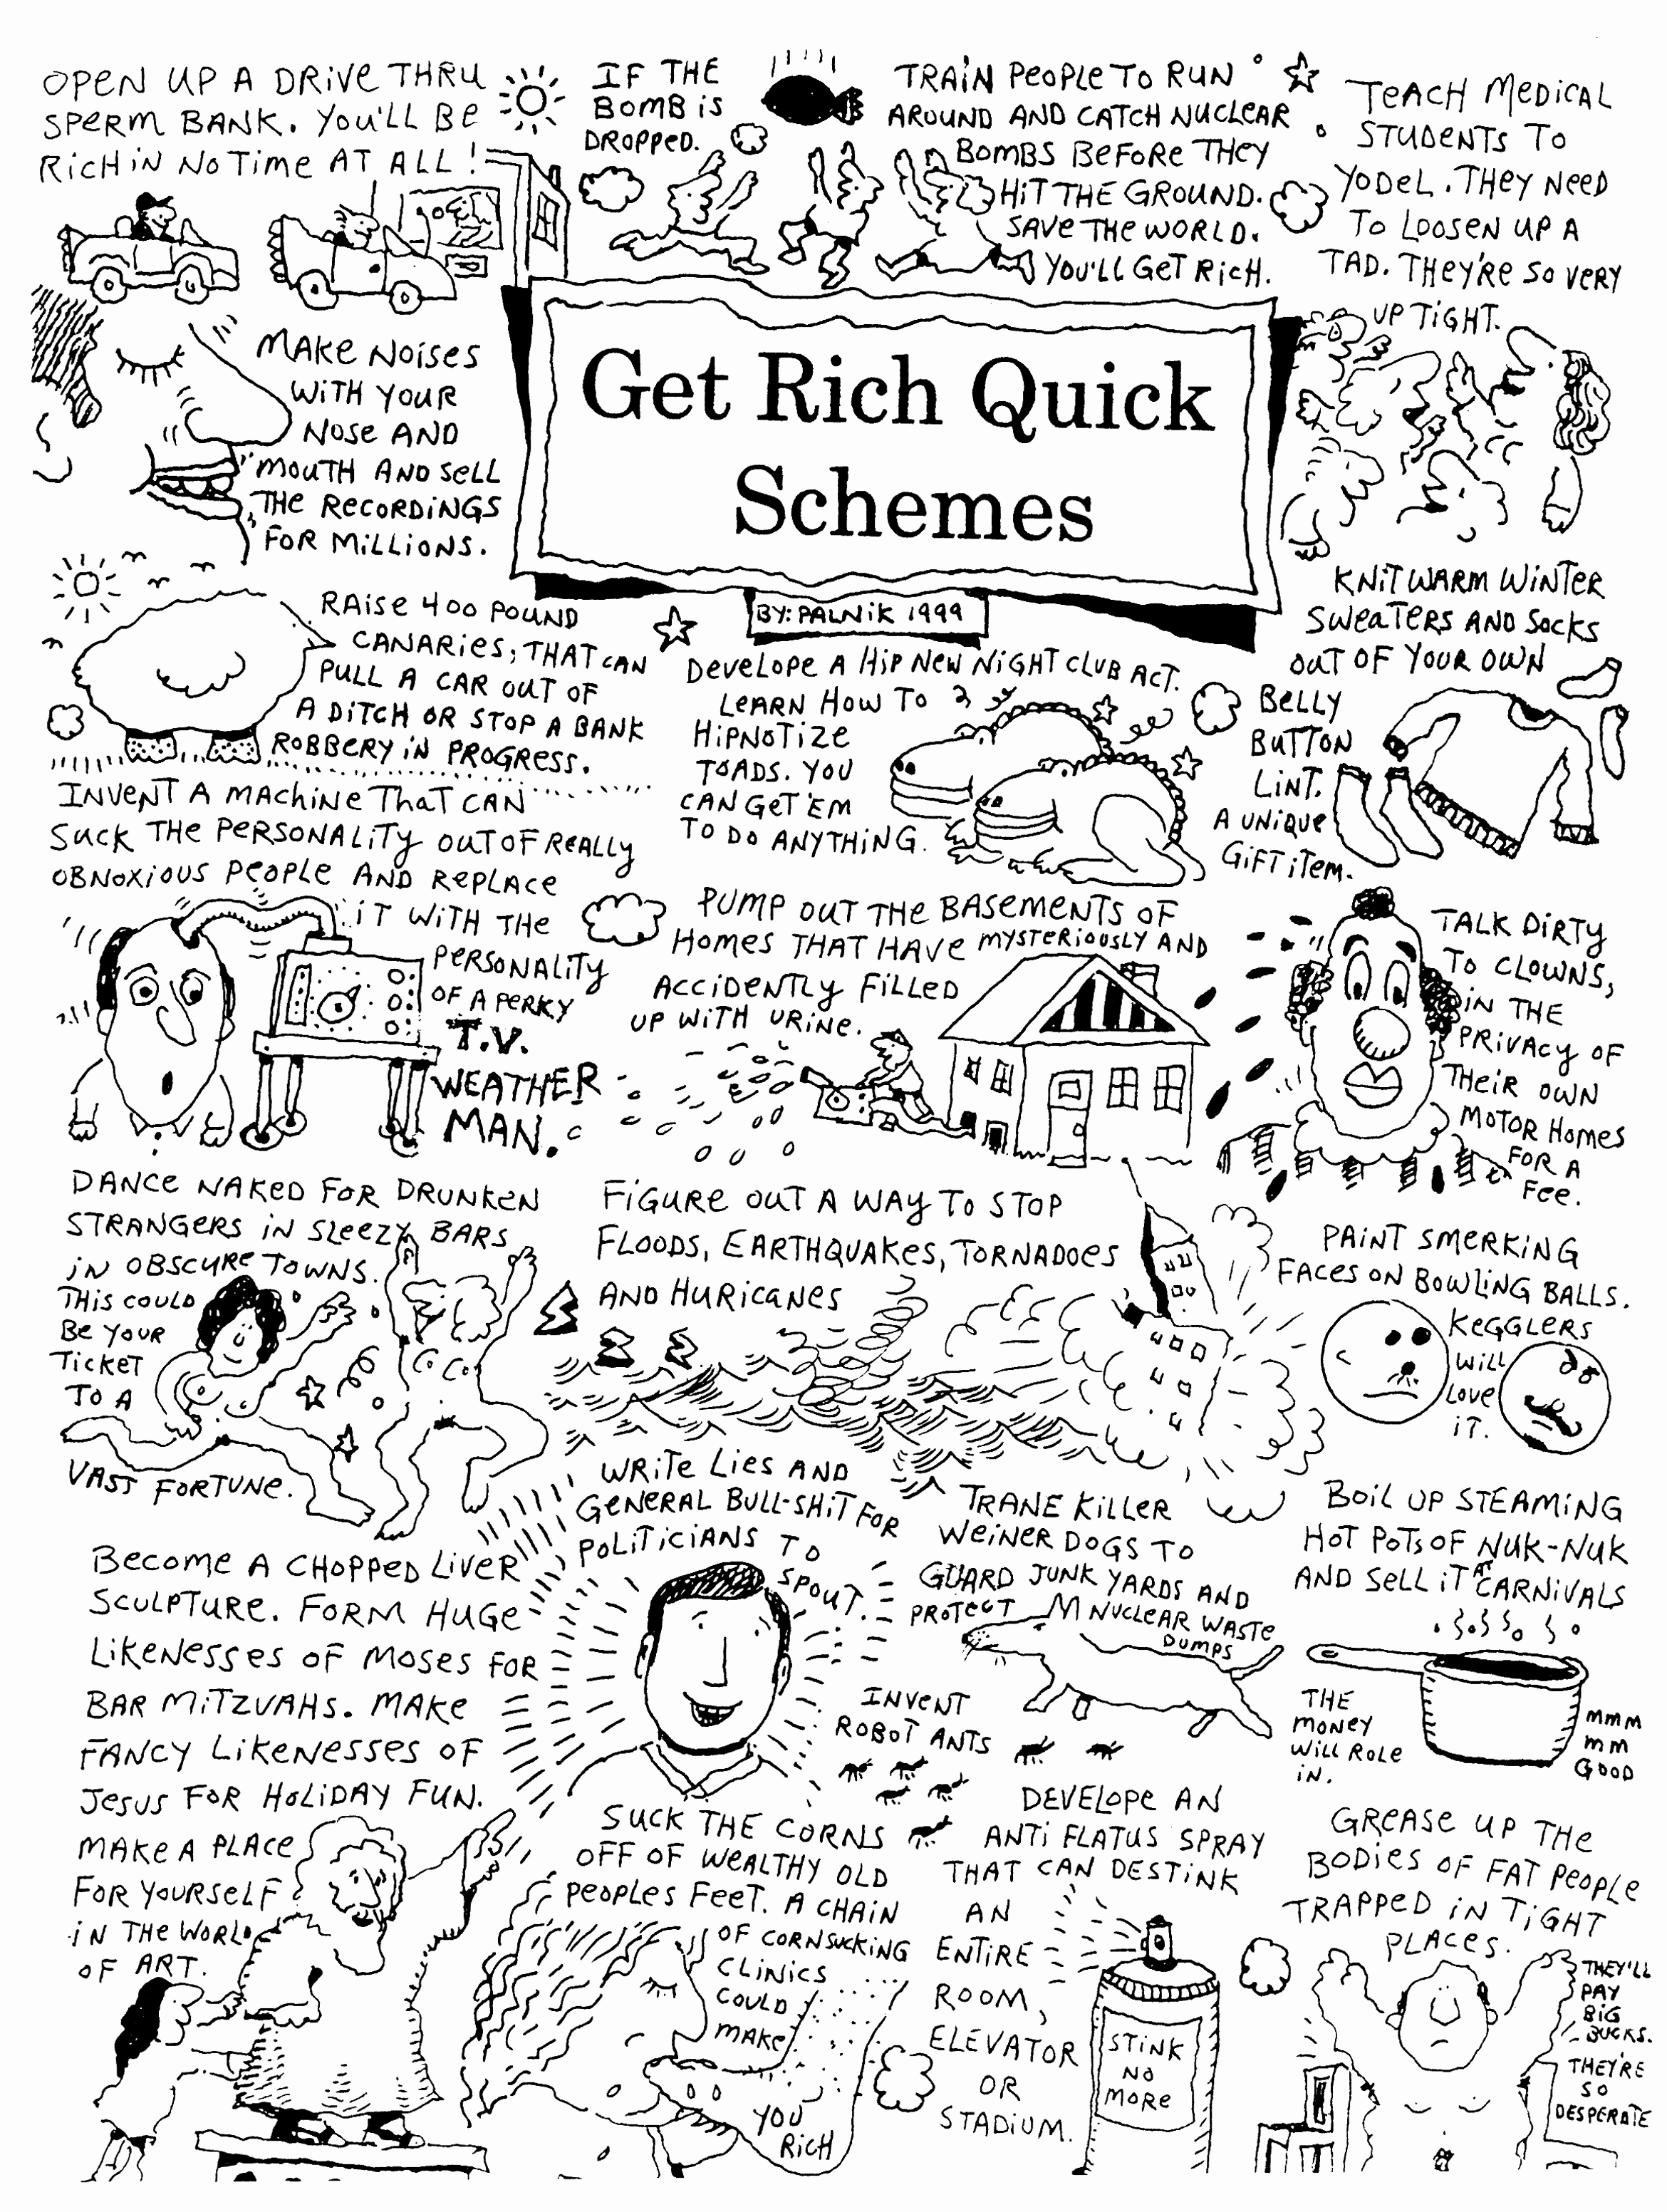 Get Rich Quick Schemes - Paul Palnik.png